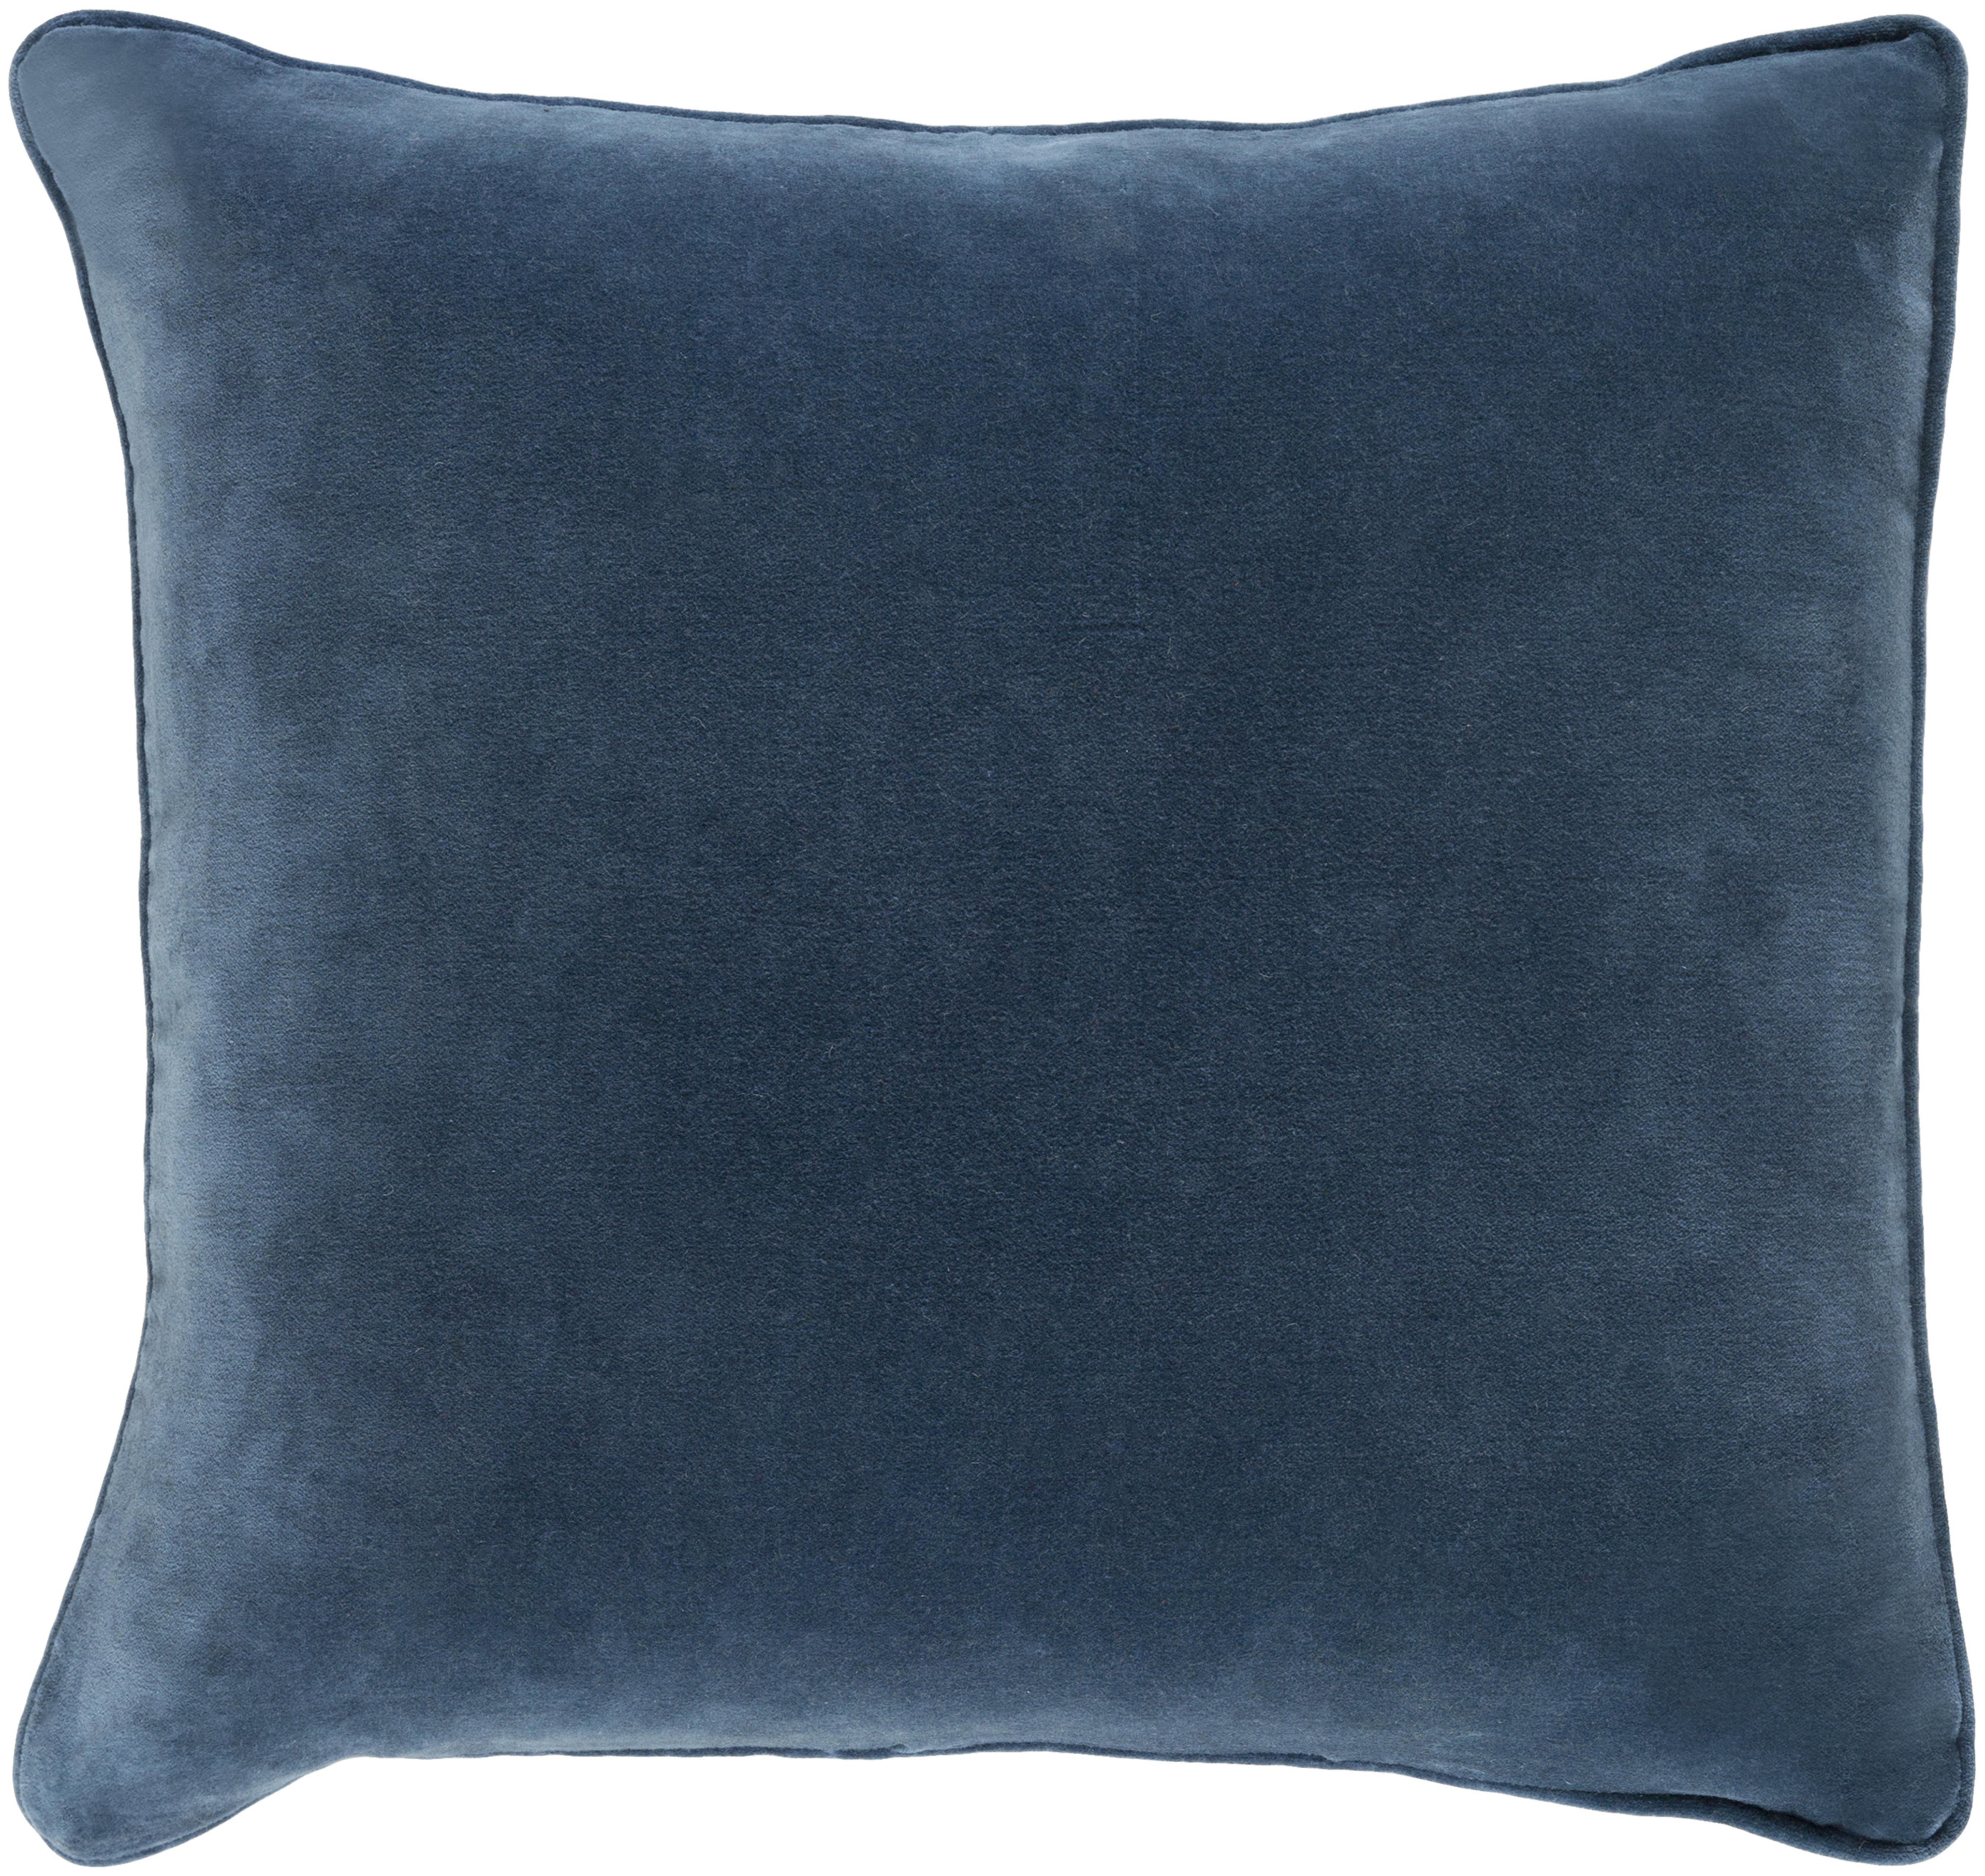 Safflower Pillow, 22" x 22", Navy - Surya